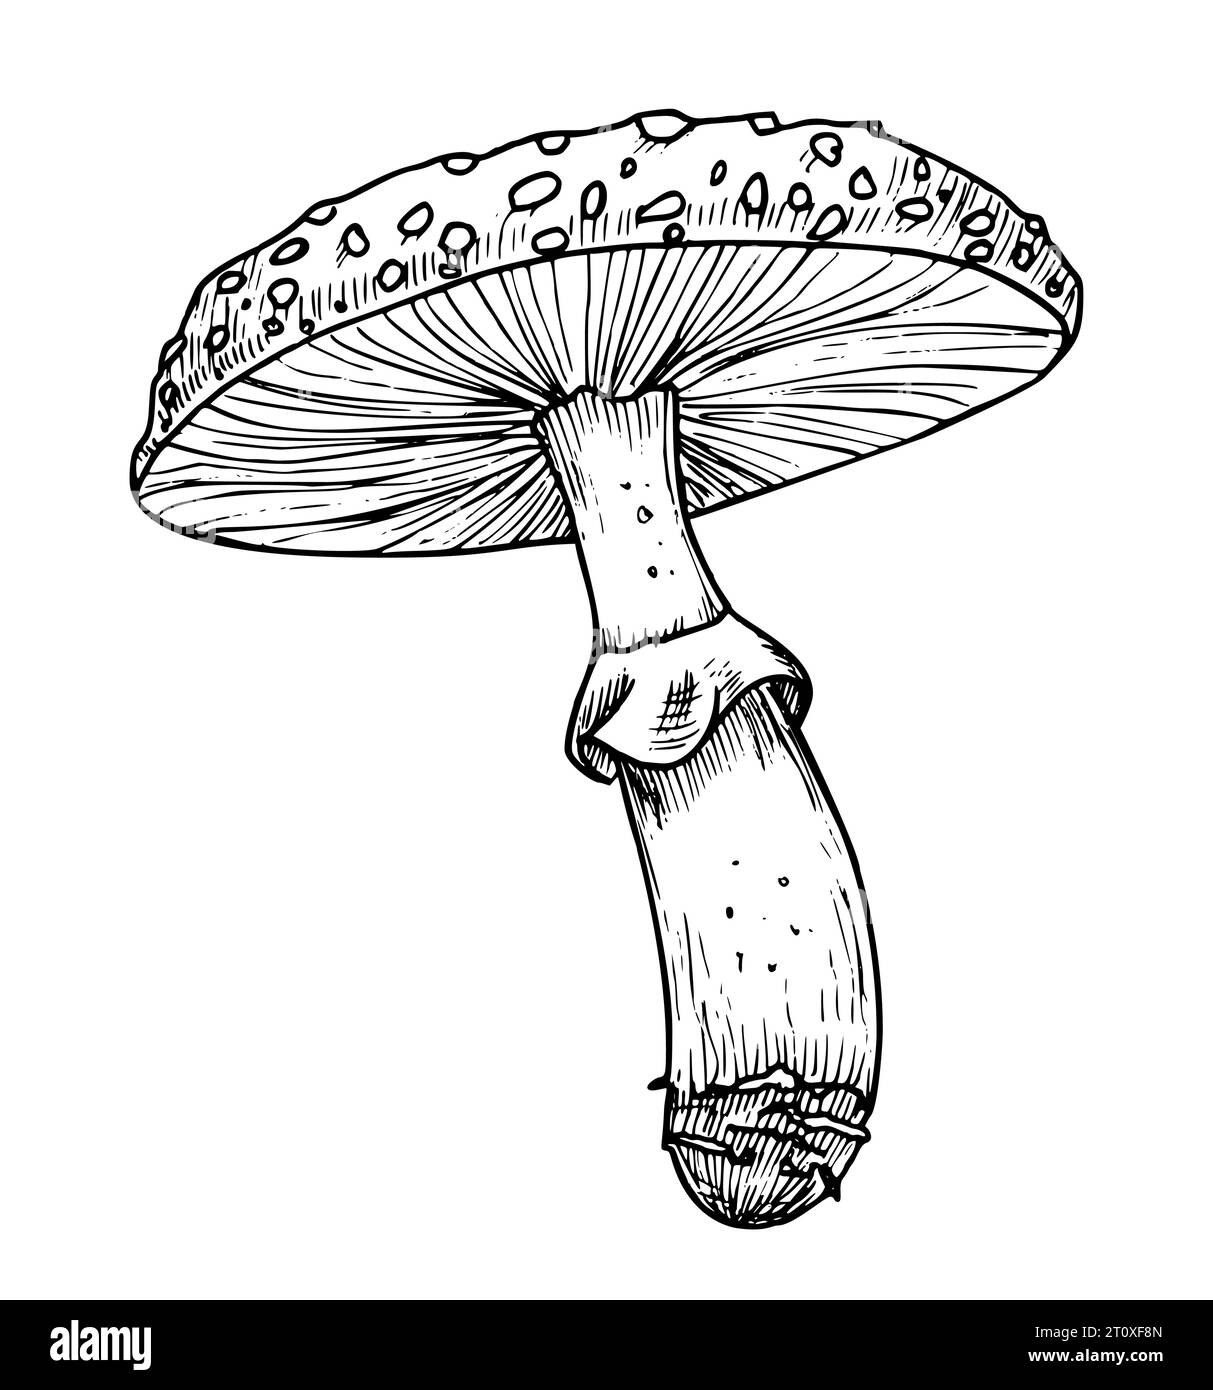 Zeichnung von Fliegenpilz. Handgezeichnete Vektorillustration von Waldpsychedelischen Pilzen in linearer Datei. Skizze des Zauberpilzes, in Schwarz-weiß-Farben gemalt. Skizze einer Waldpflanze für Symbol. Stock Vektor